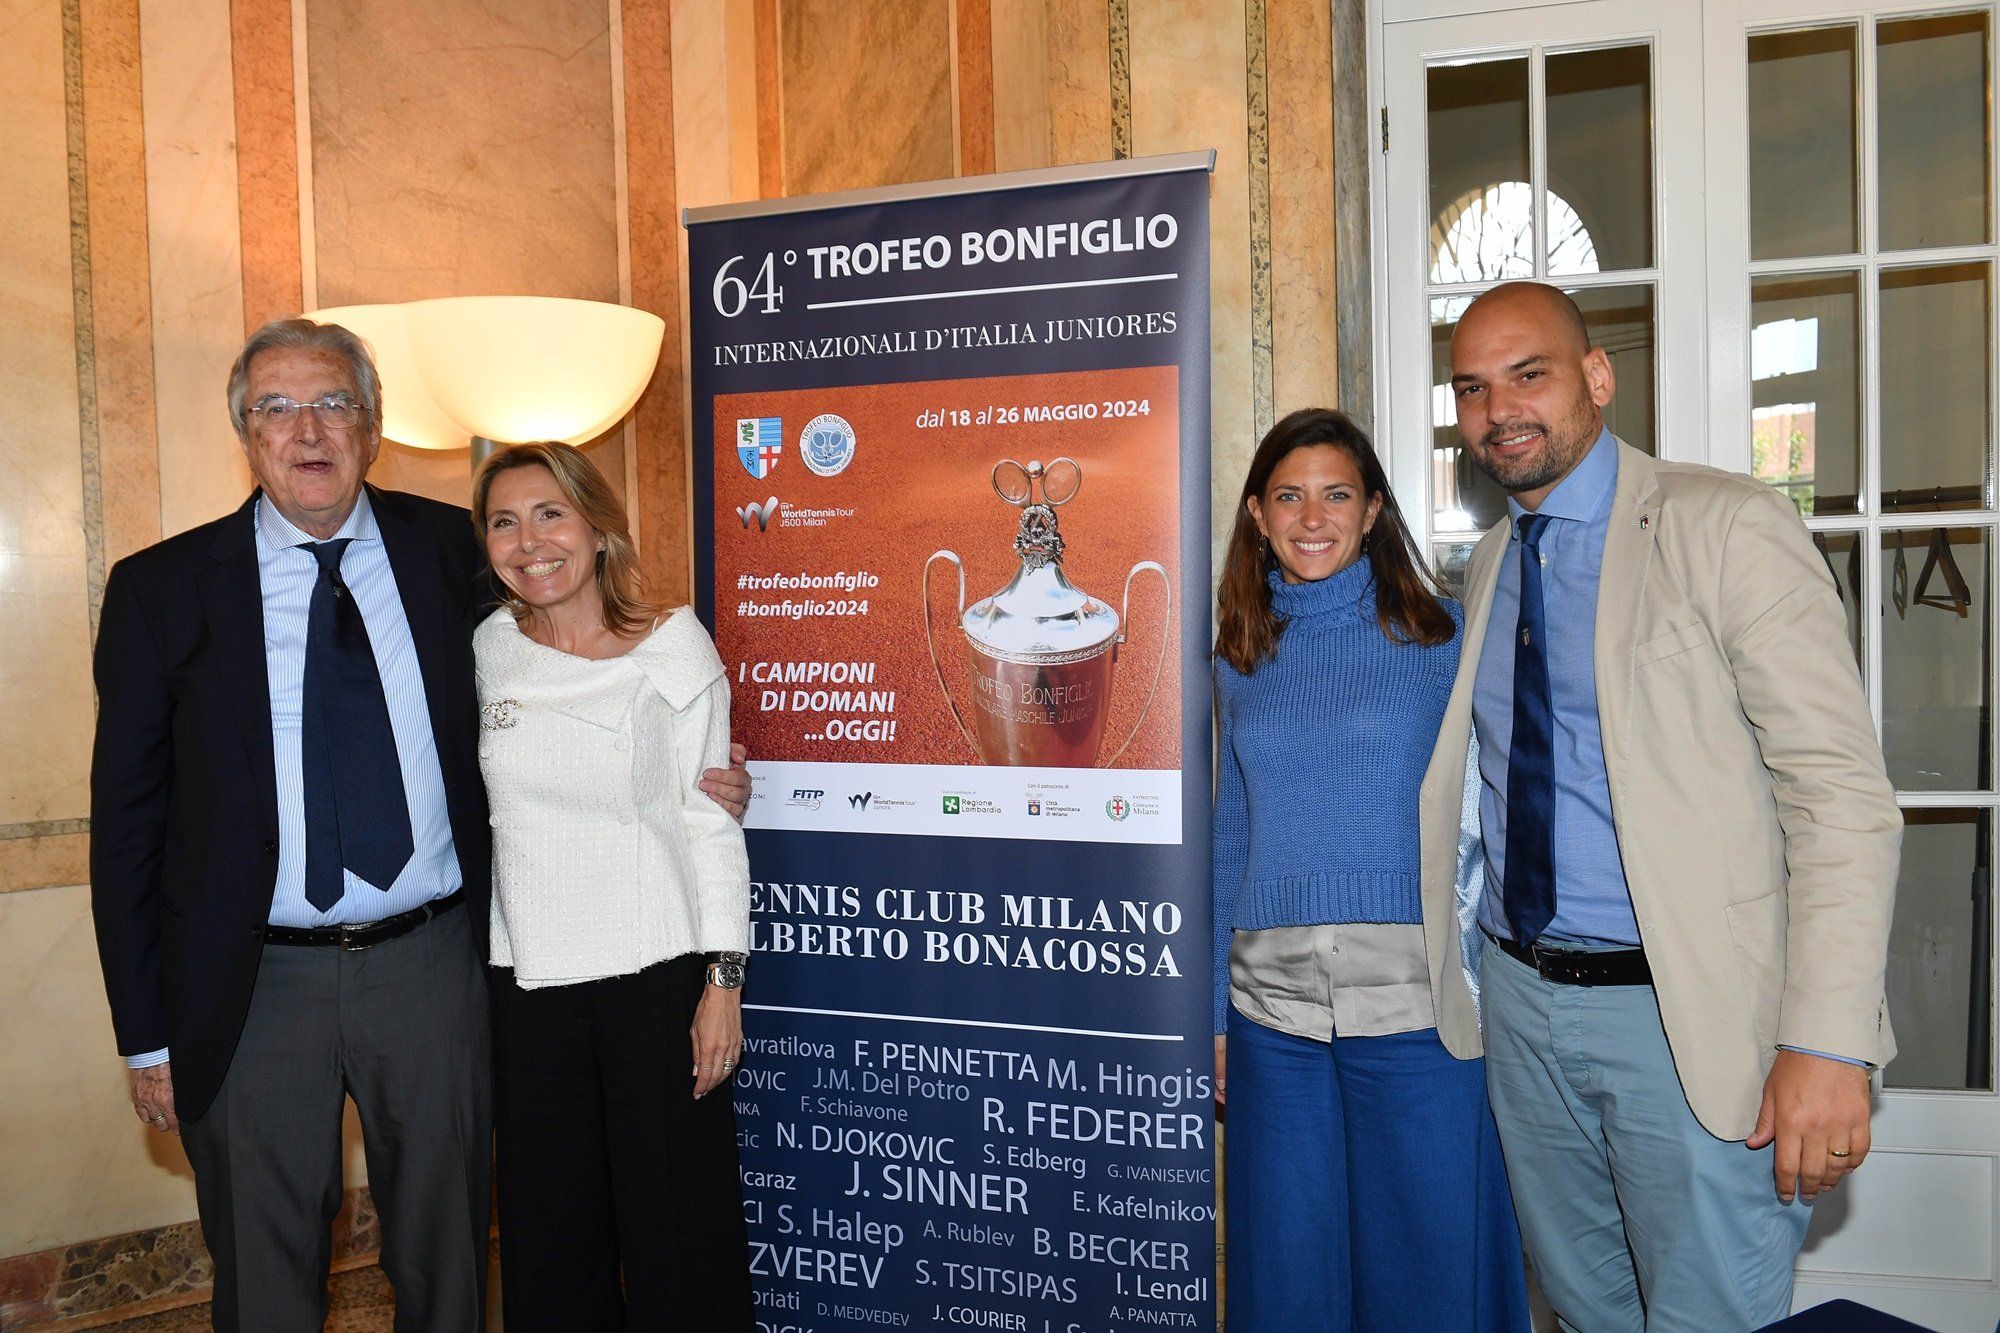 Il Trofeo Bonfiglio è in programma sui campi del Tennis Club Milano Alberto Bonacossa da sabato 18 a domenica 26 maggio (foto Francesco Panunzio)